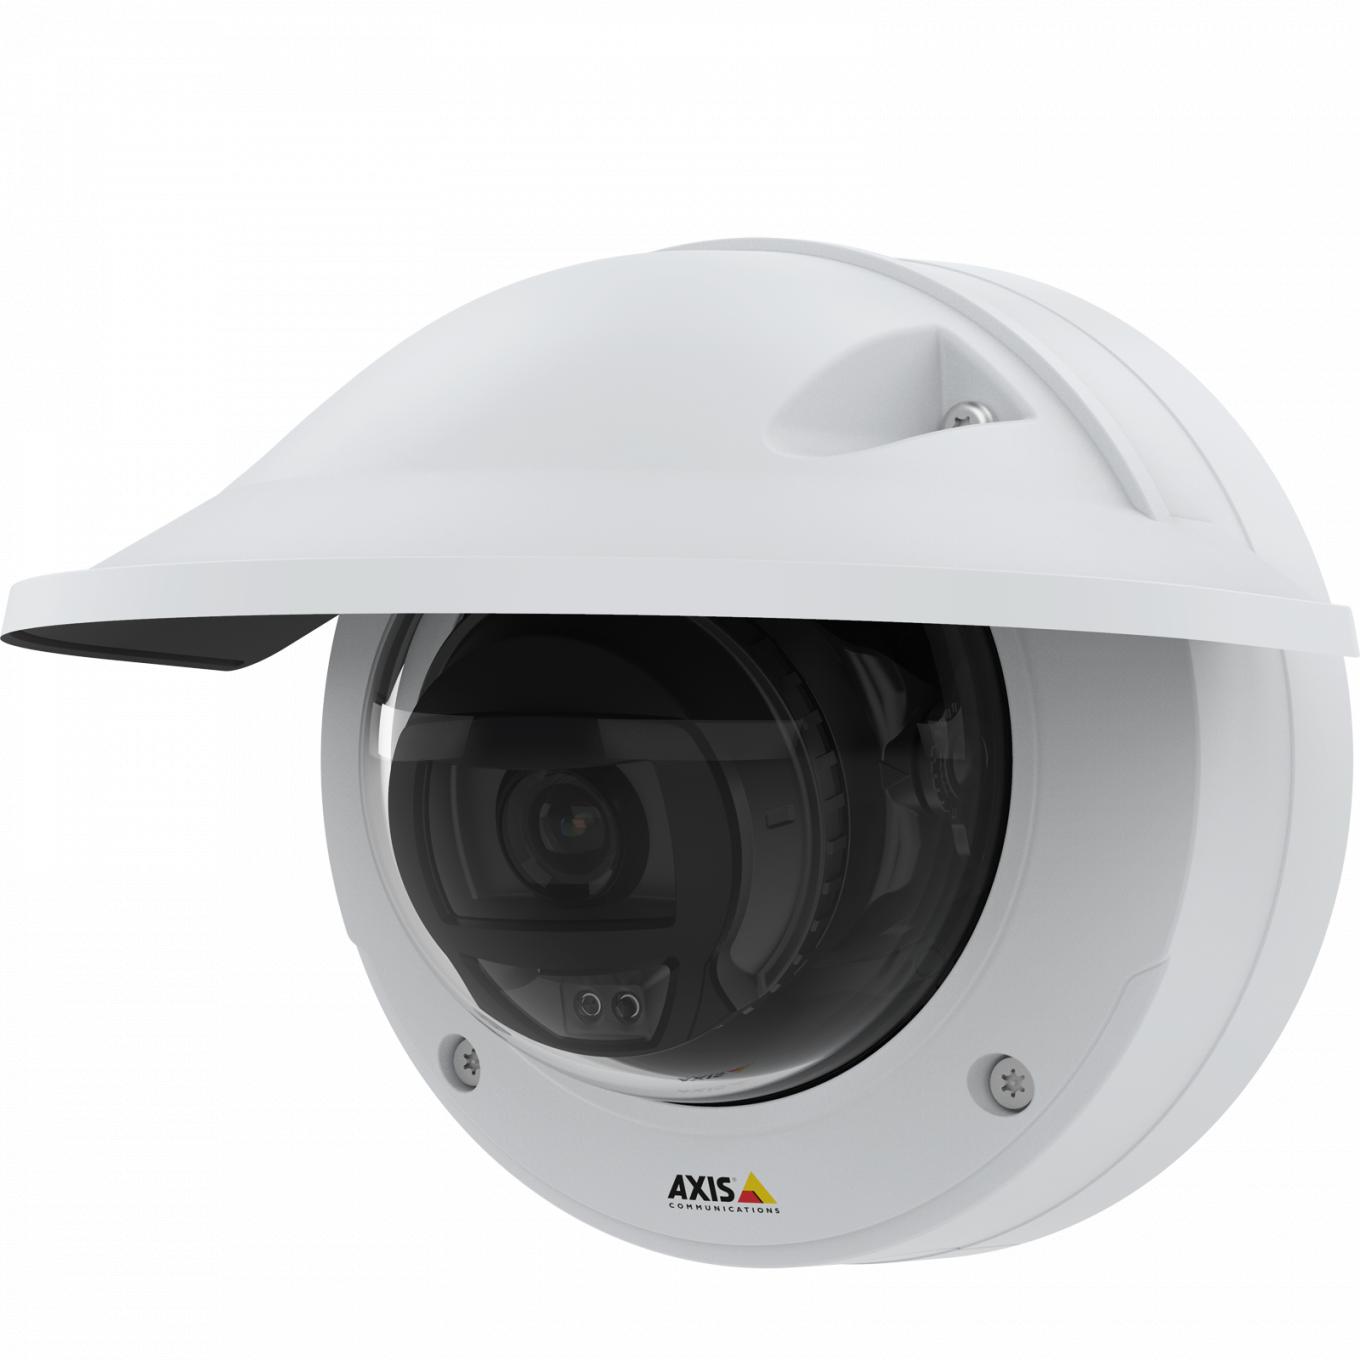 AXIS P3245 LVE IP Camera ha una qualità video HDTV 1080p. La telecamera è vista da sinistra e ha uno schermo di protezione dagli agenti atmosferici.